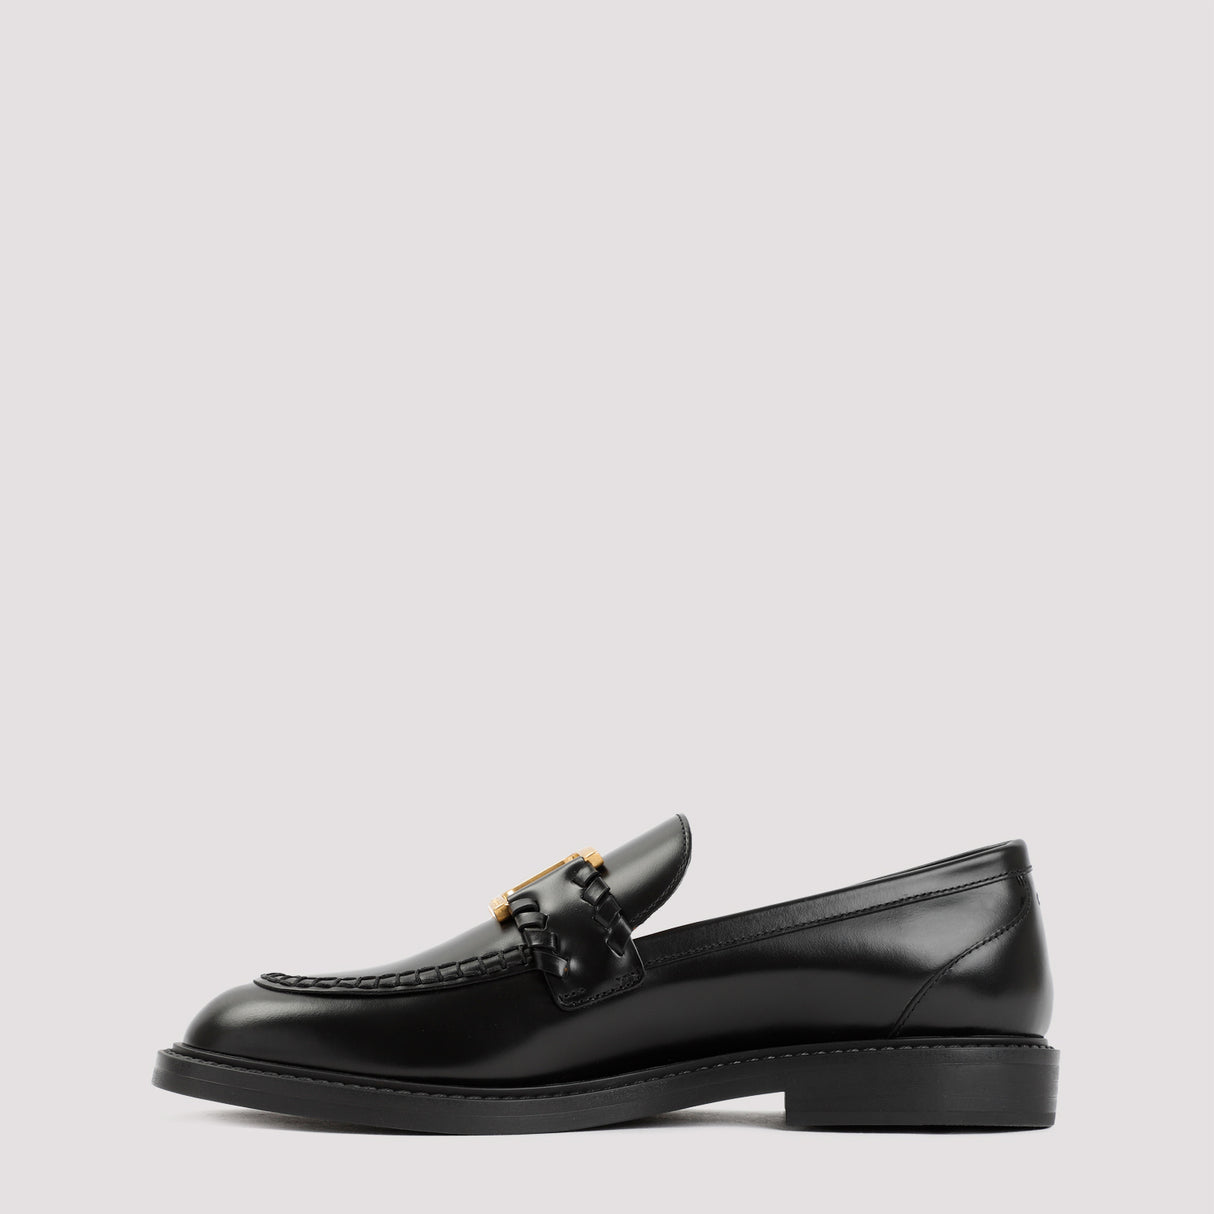 Giày lười màu đen cao cấp dành cho phái đẹp - Sang trọng và bền vững